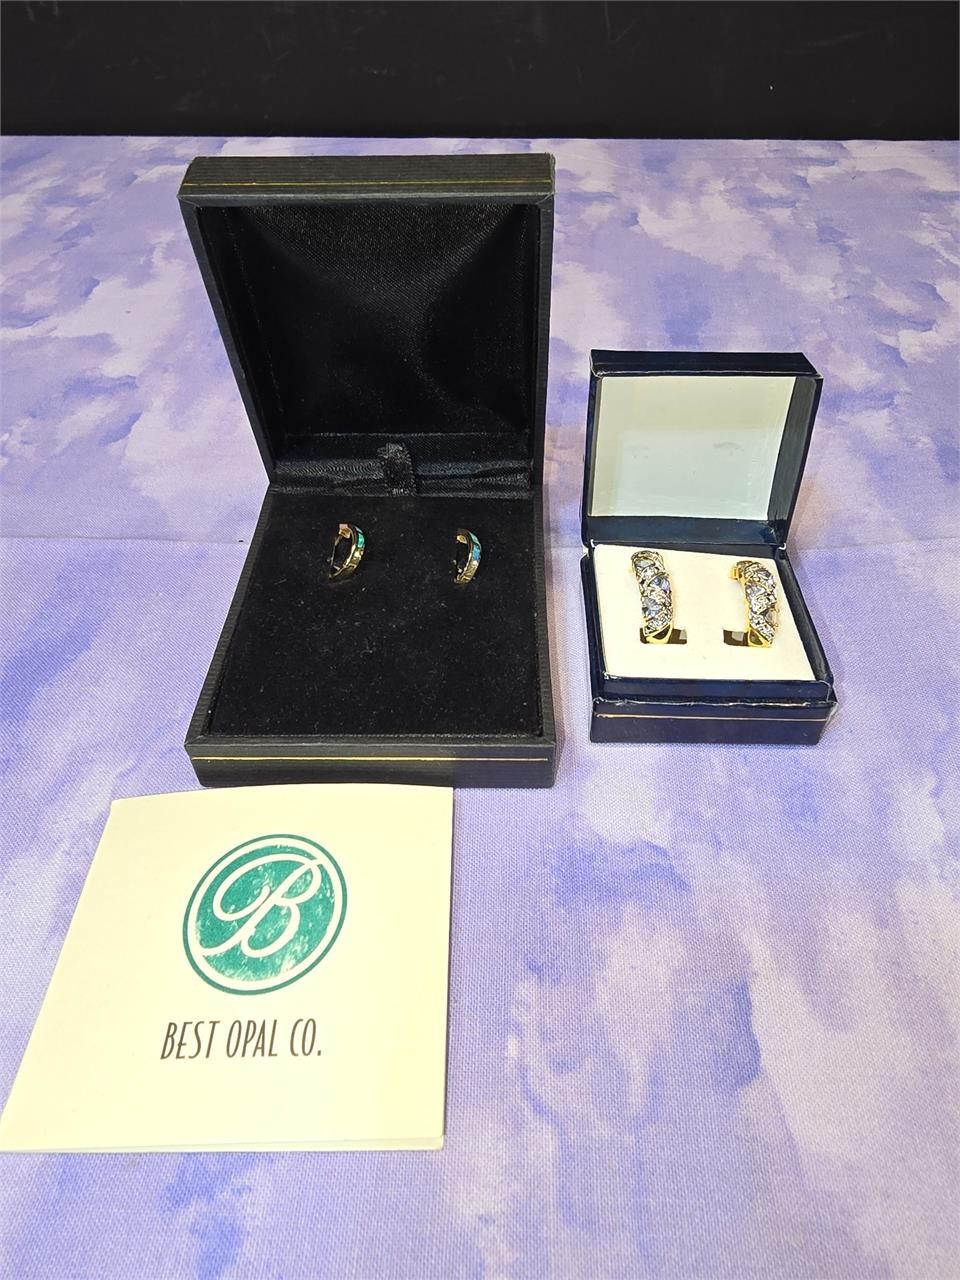 Best Opal Co. earrings and HSN earrings